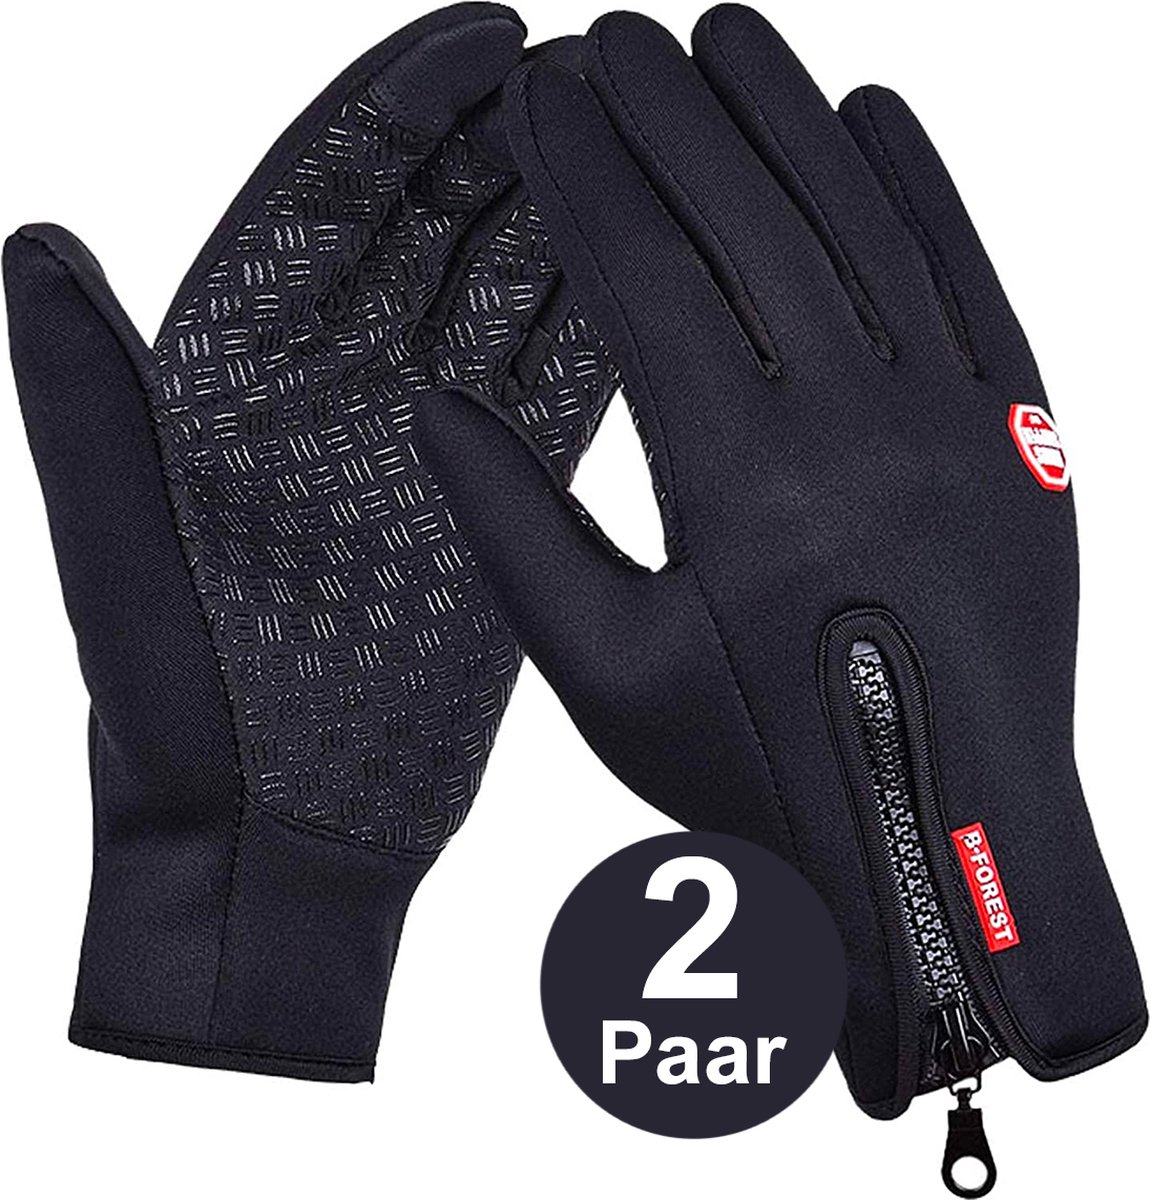 Fietshandschoenen Winter - Handschoenen - Sport Handschoenen Met Rits - Touchscreen Telefoon - Anti Slip Gloves - Heren / Dames - Maat S - Zwart - 2 Paar - Cadeautje - Valentijn